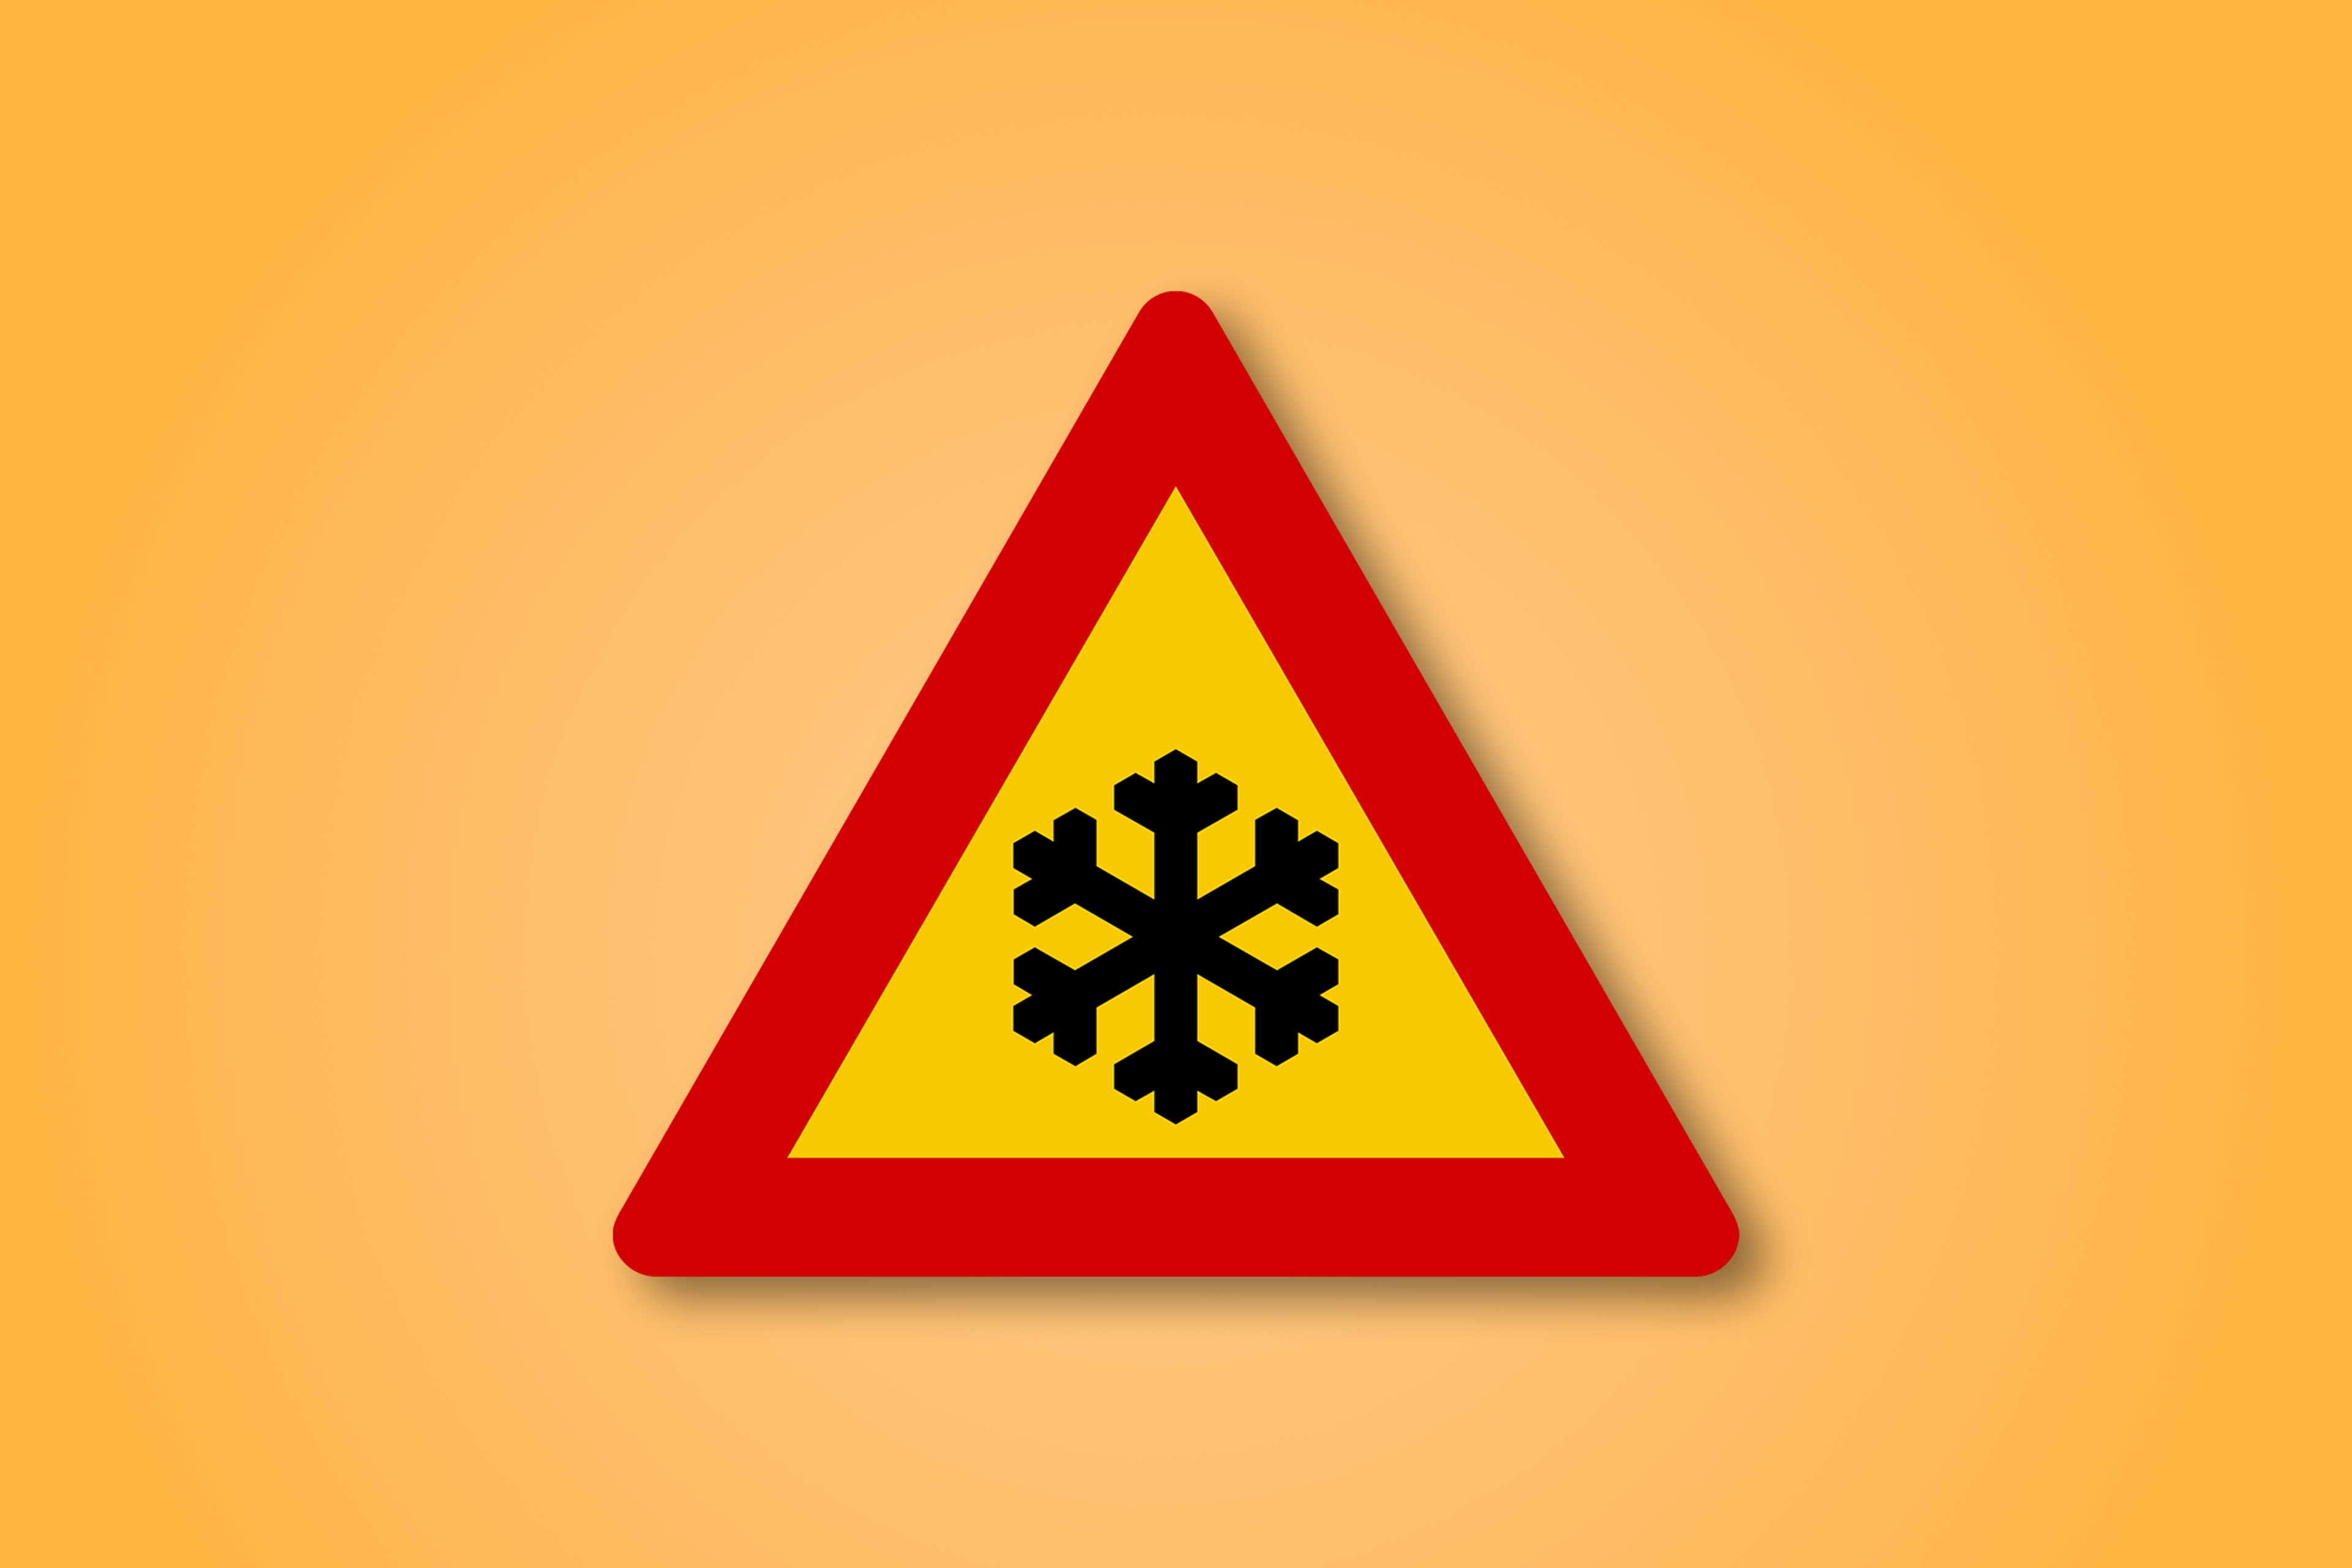 Panneau rouge et jaune avec un flocon de neige au milieu. Ce panneau signifie route glacée.